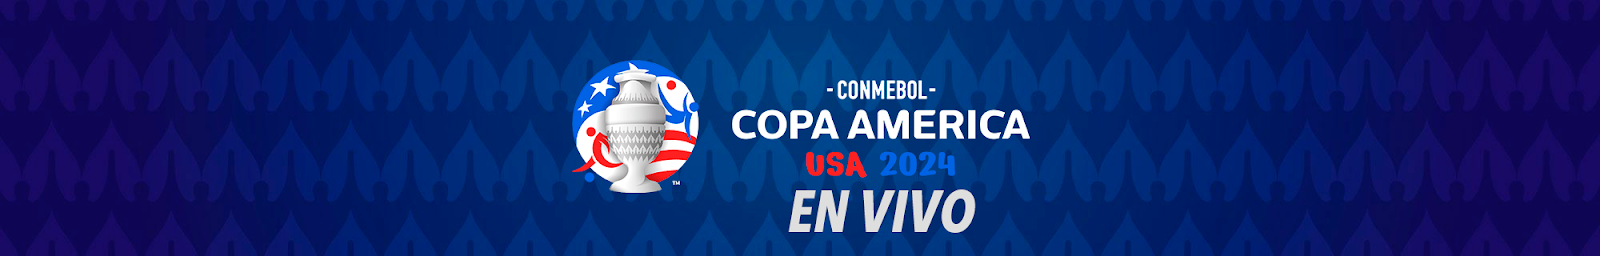 Imagen de la Copa América